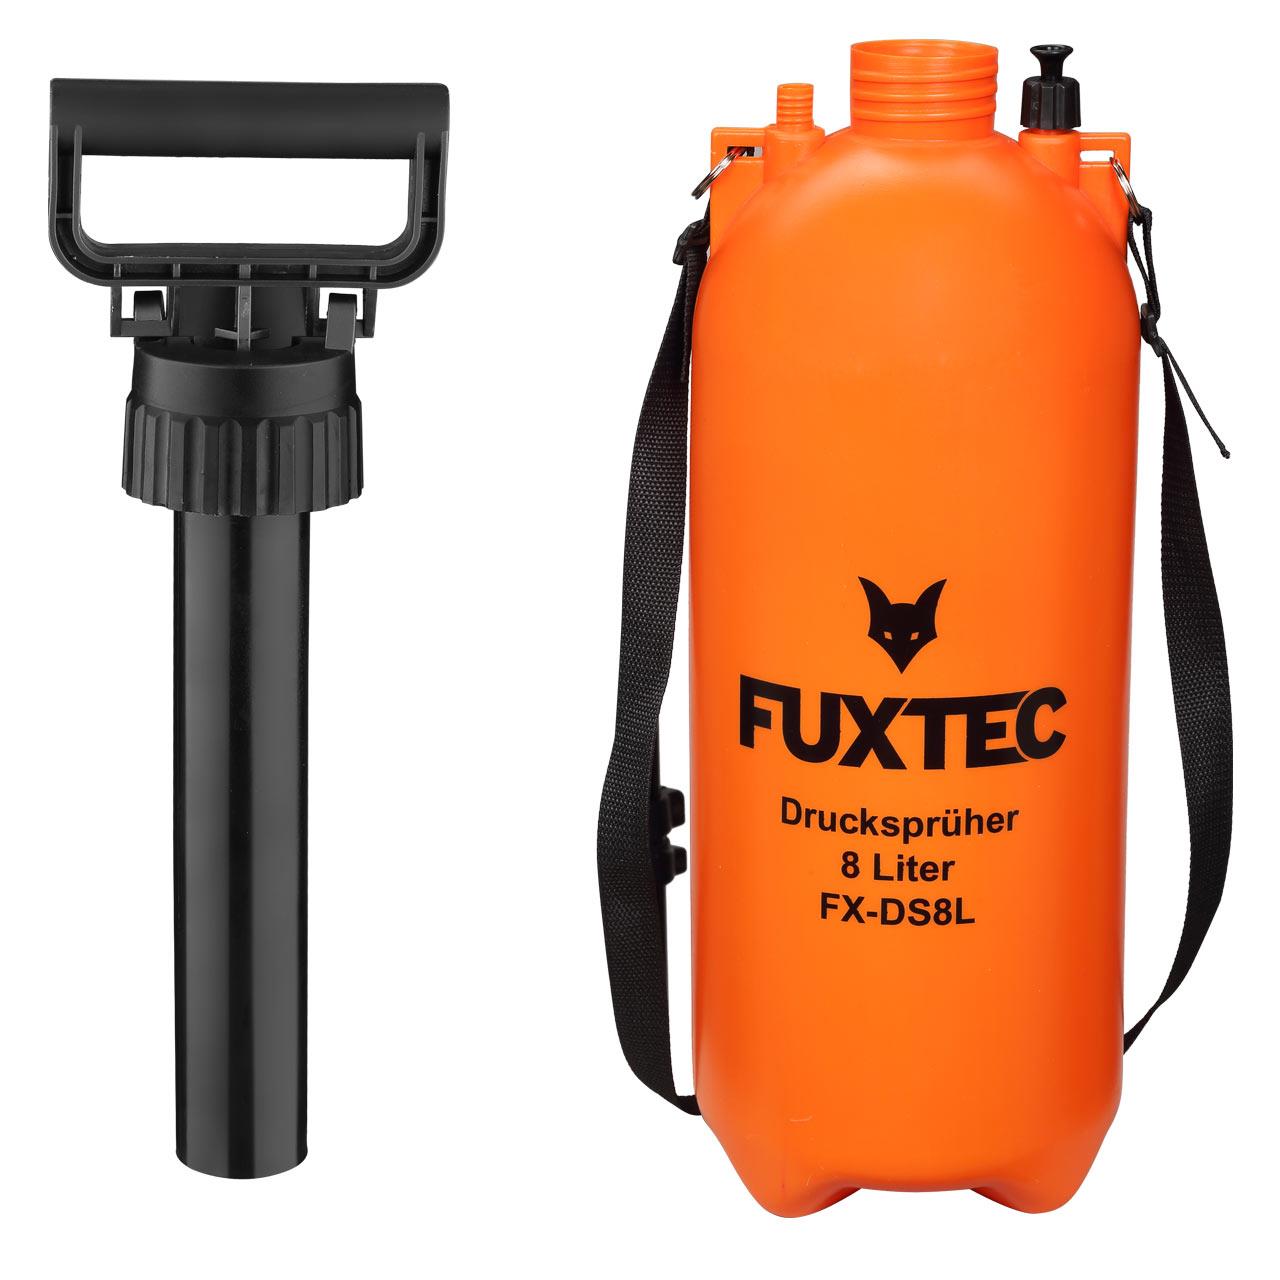 FUXTEC pressure sprayer 8 litres FX-DS8L